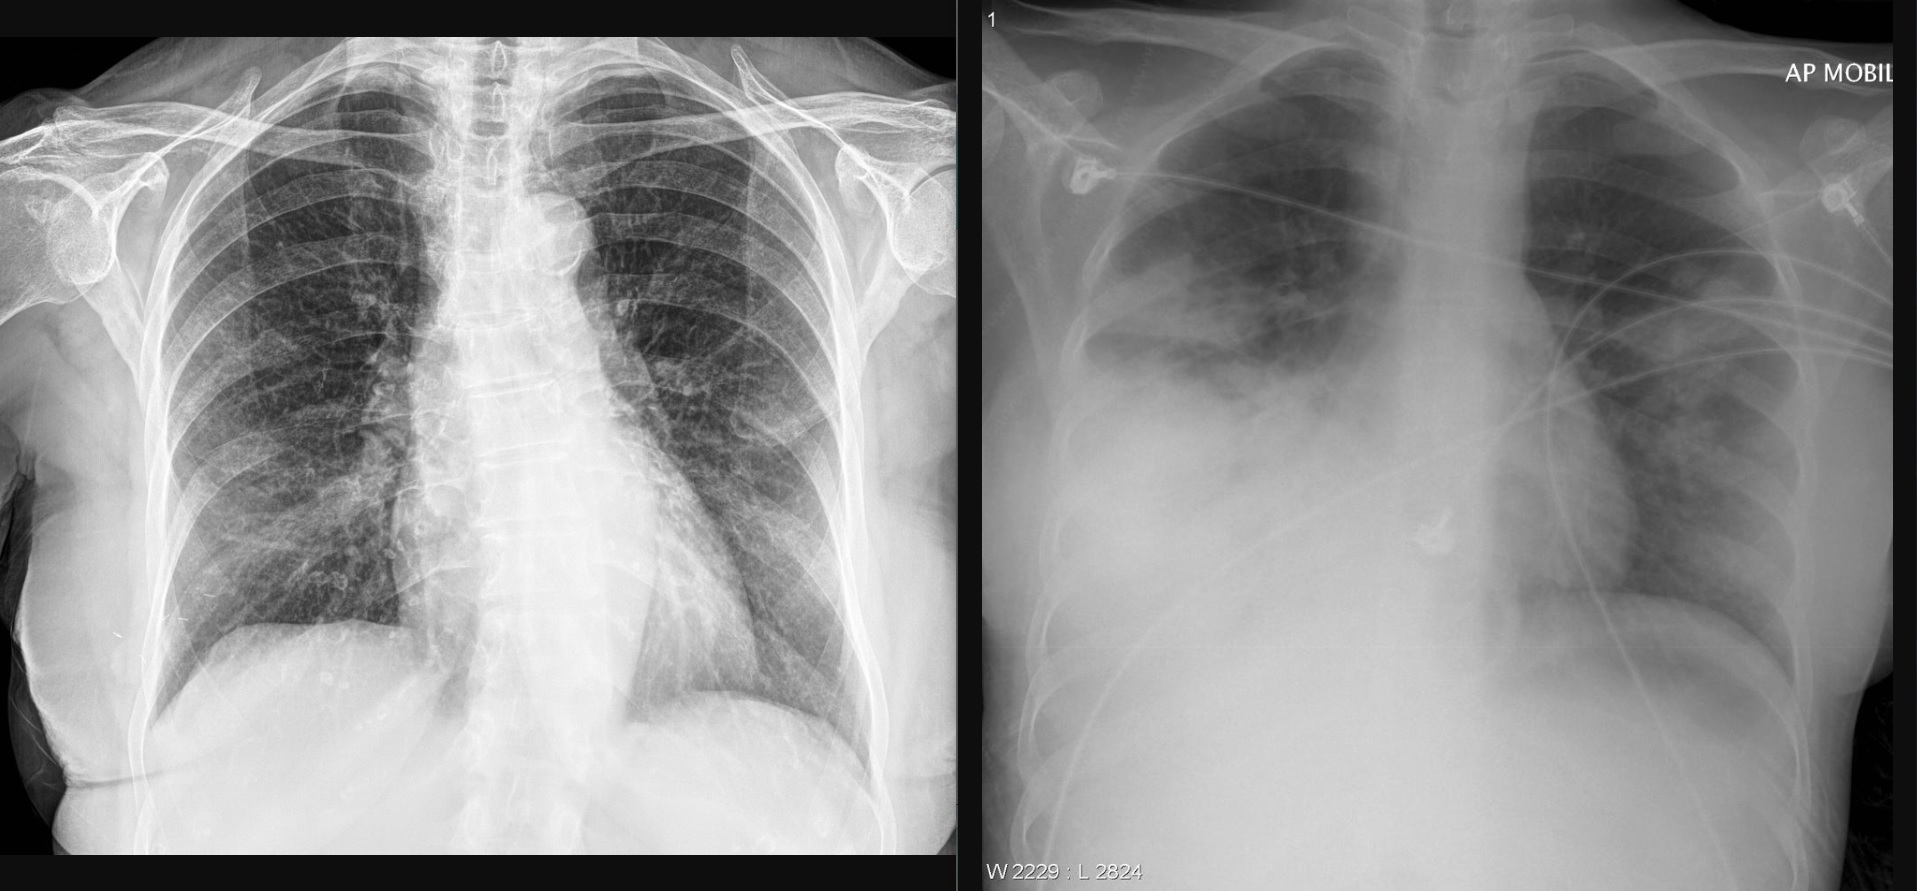 Türk araştırmacıdan röntgen görüntüsü ile Covid-19 pnömonisini belirleyen web sayfası